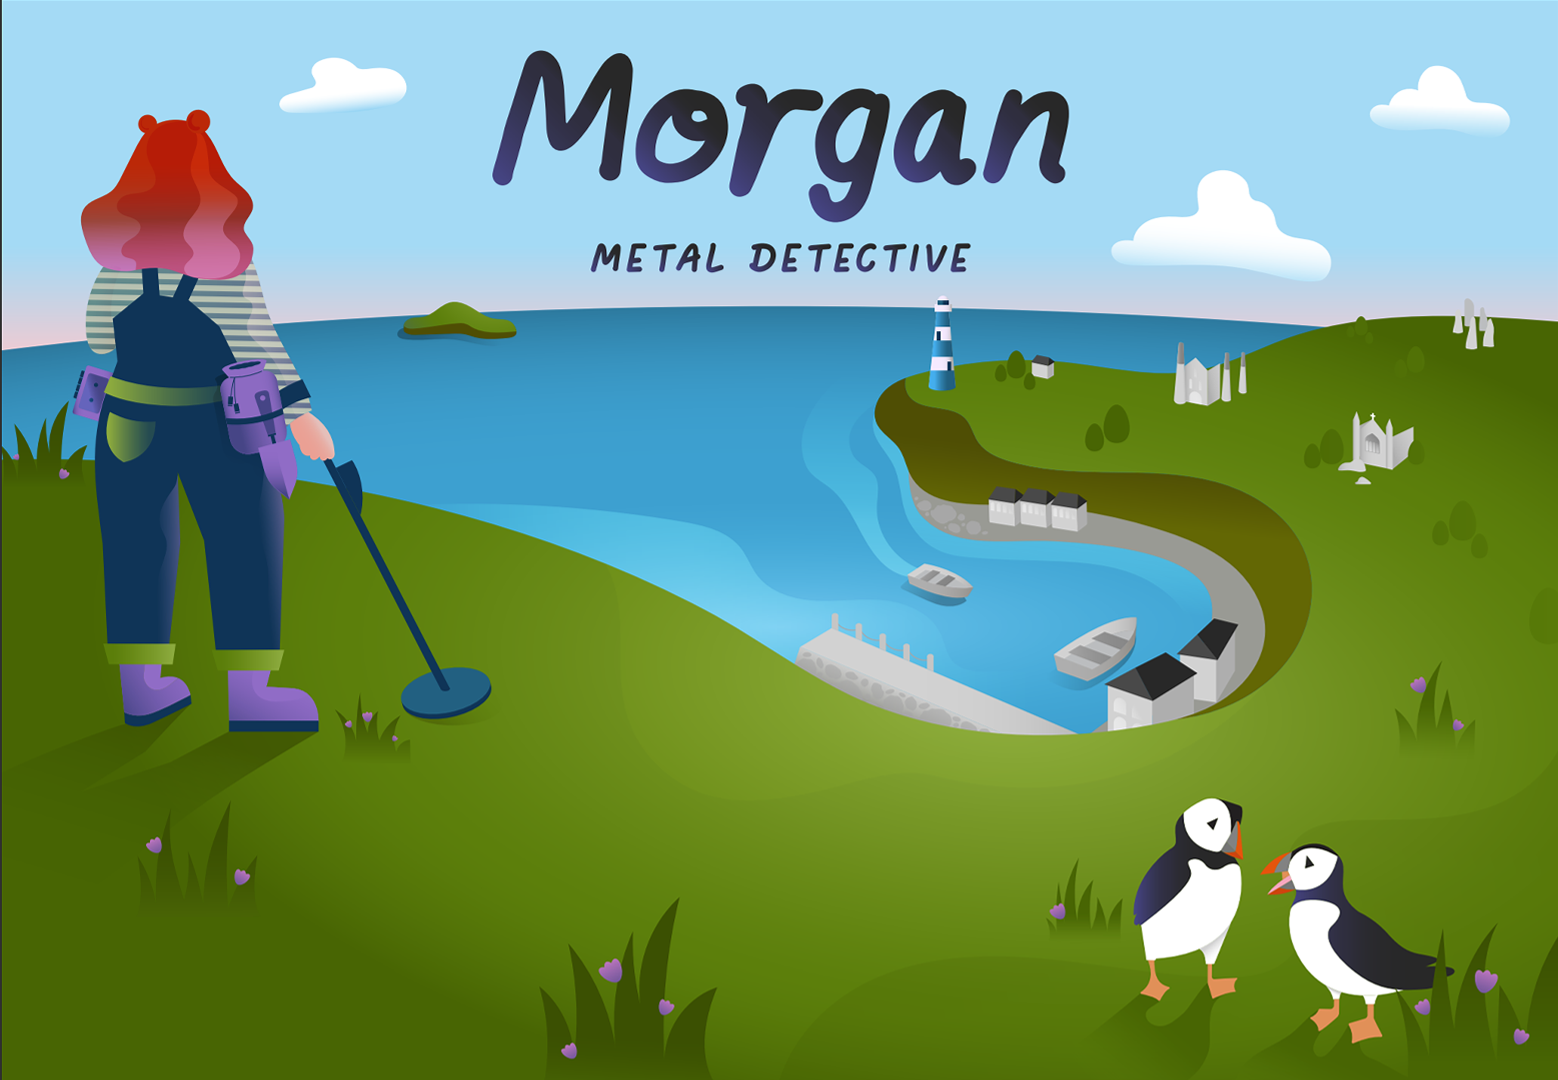 morgan metal detective poster